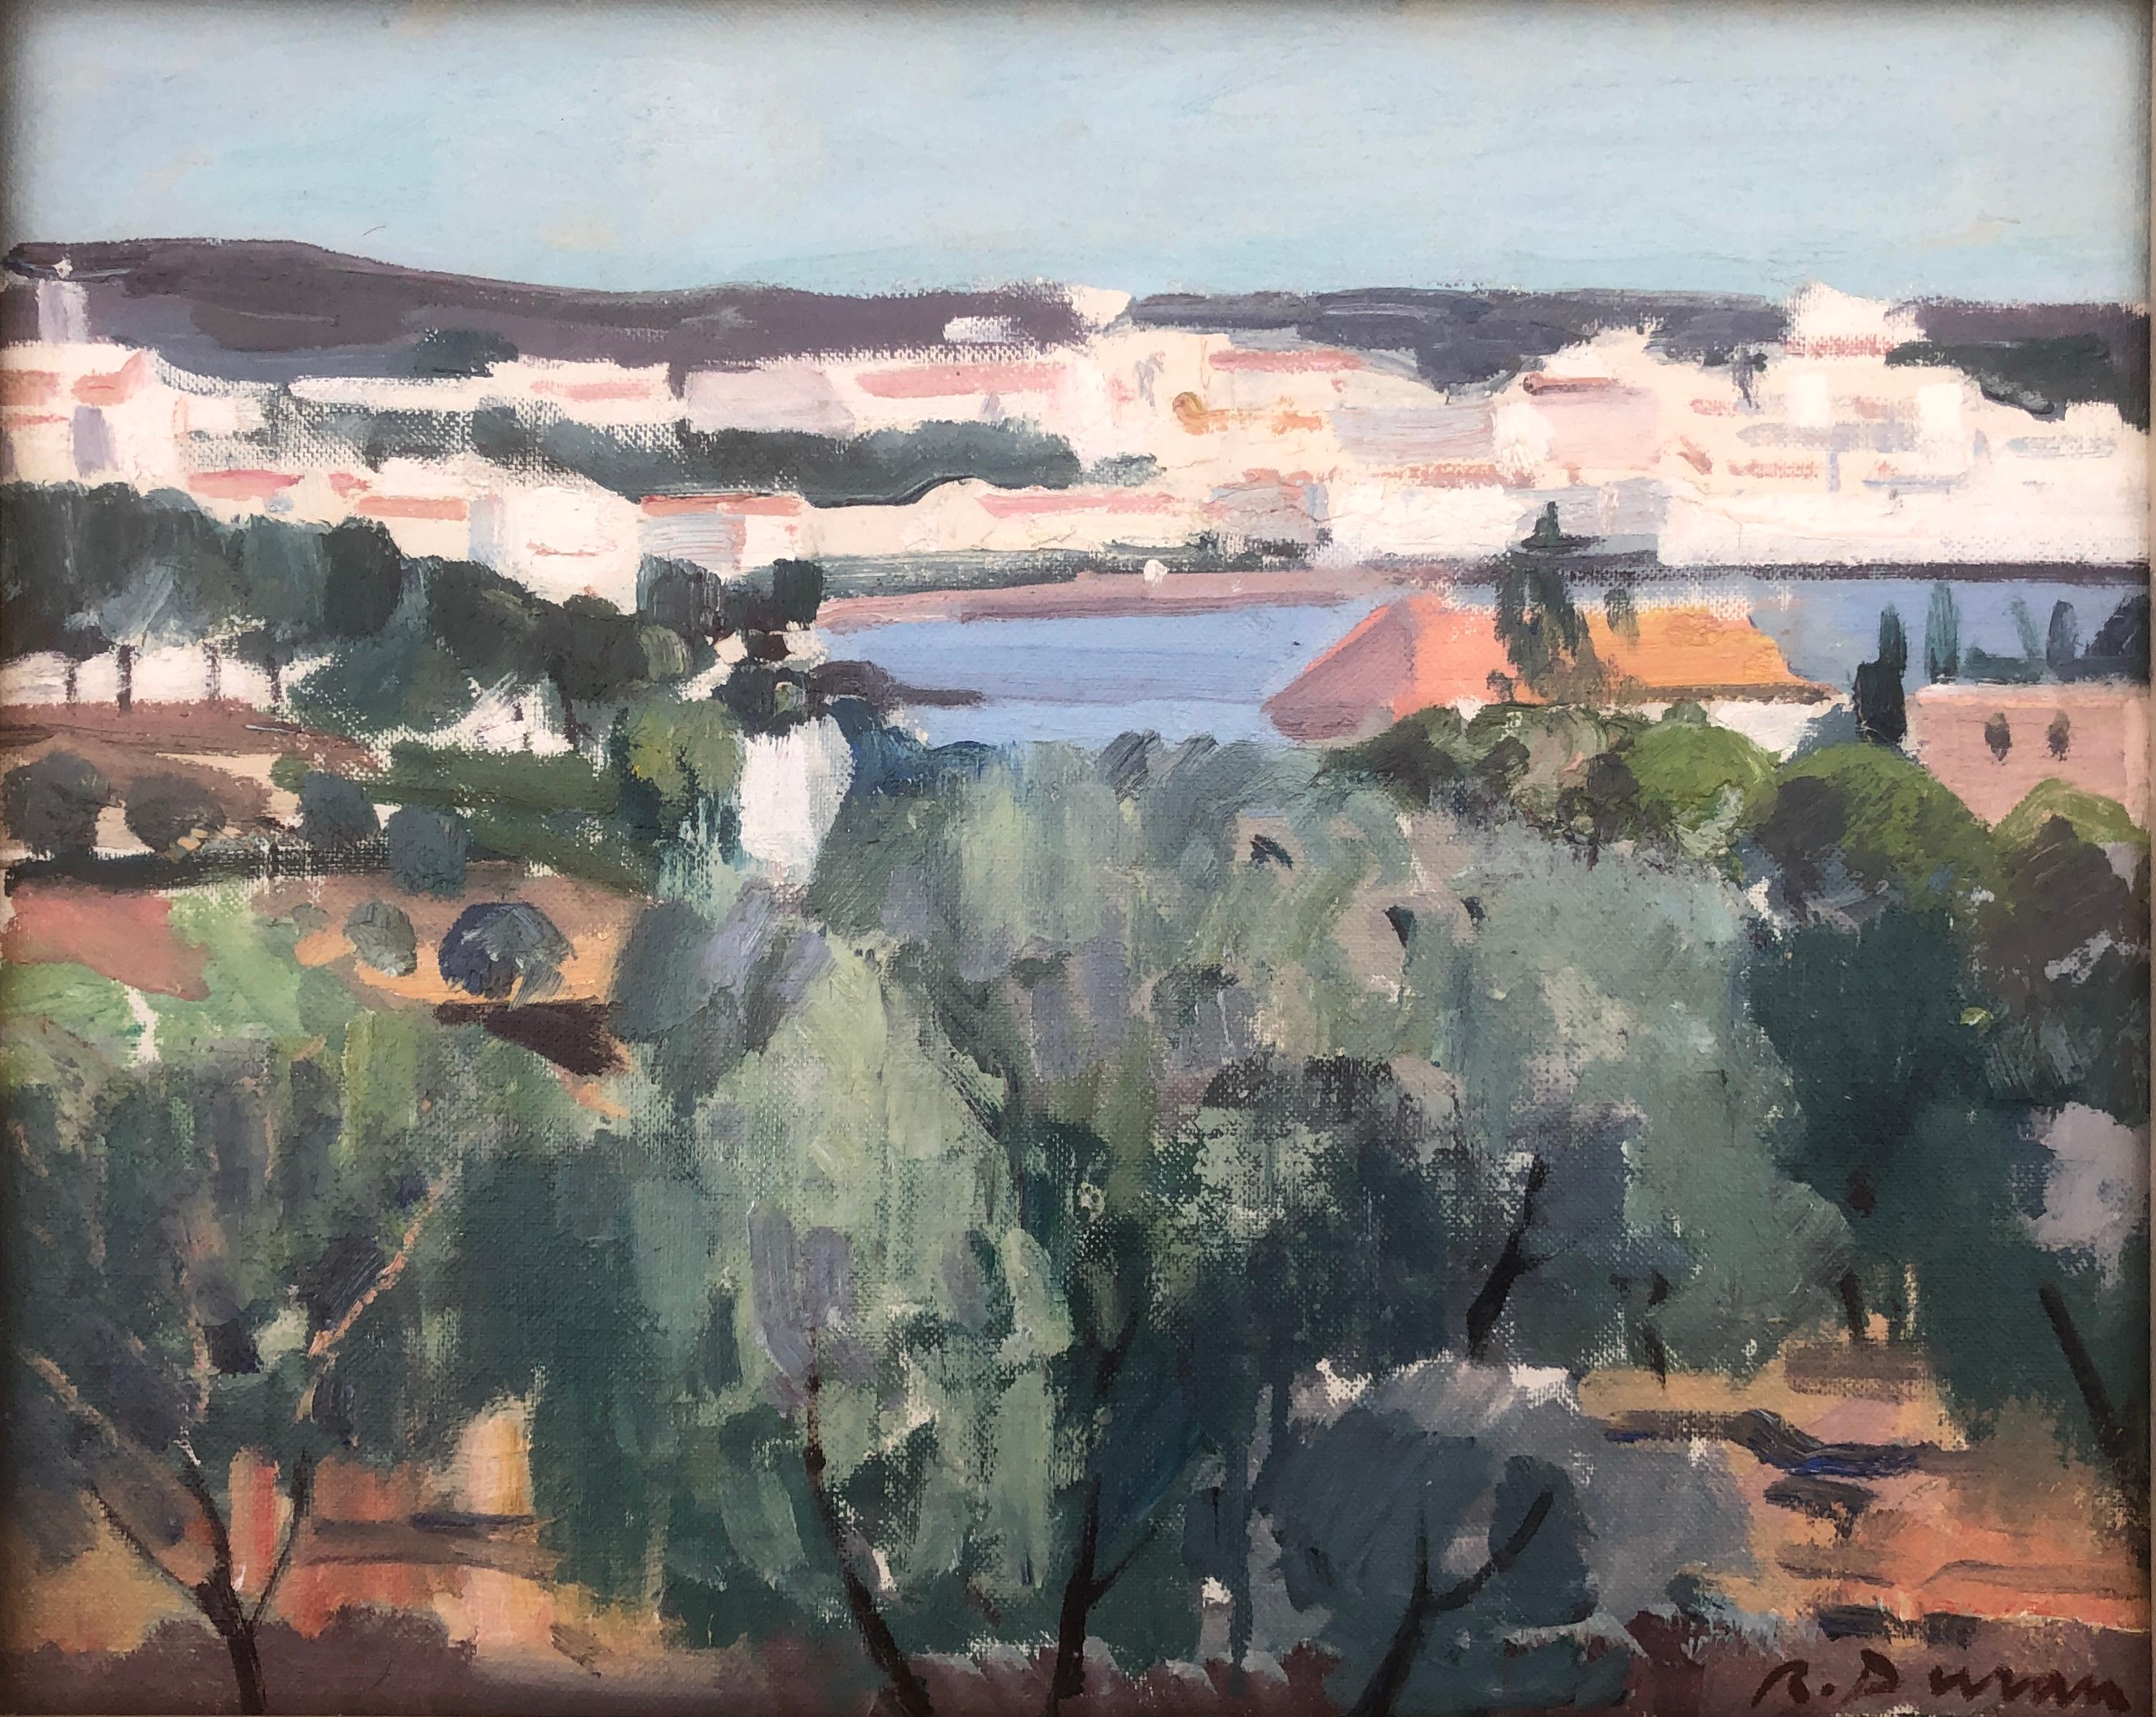 Landscape Painting Rafael Duran Benet - Cadaques Espagne peinture à l'huile paysage marin méditerranéen espagnol